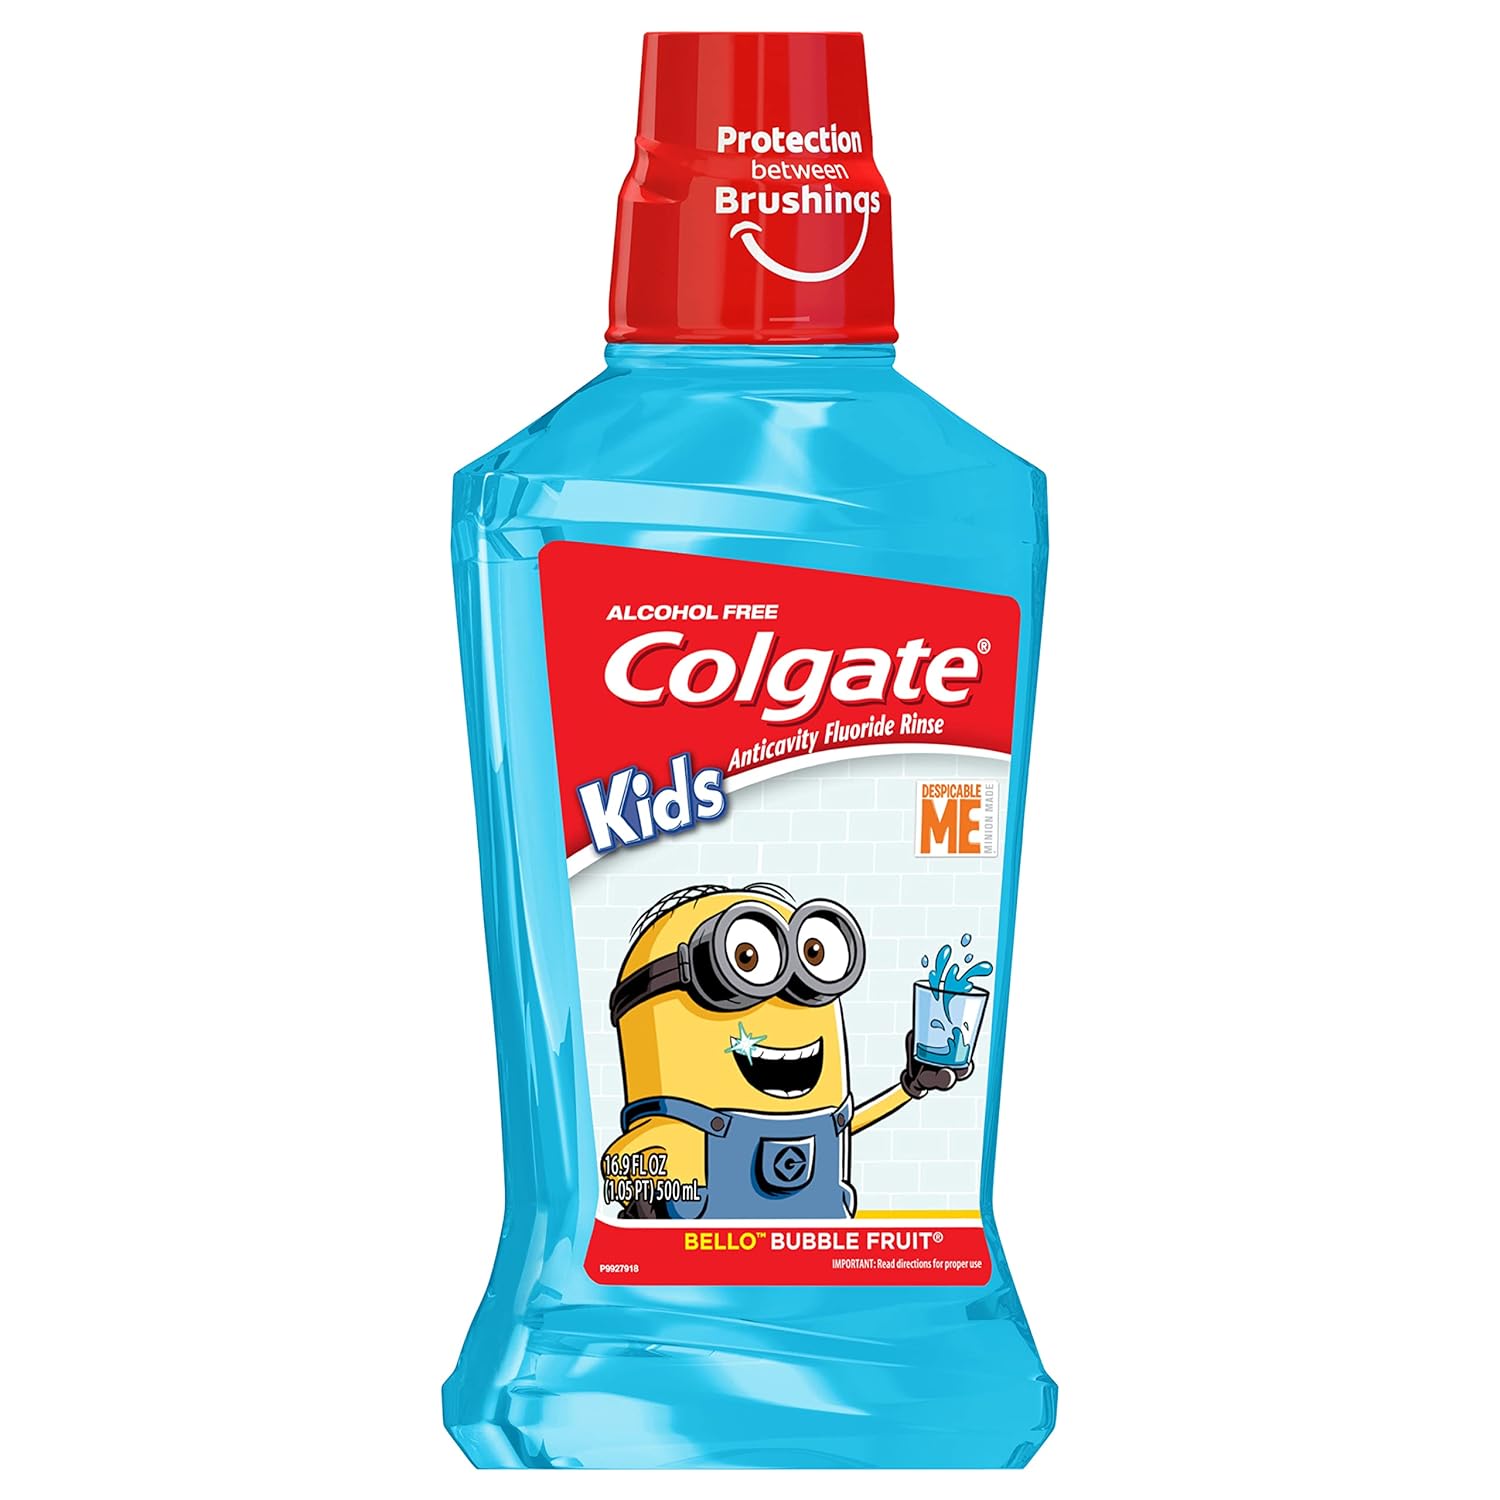 Colgate Kids Mouthwash, Minions, Bubble Fruit Flavor, Anticavity Fluoride Mouthwash, 16.9 Ounce : Health & Household